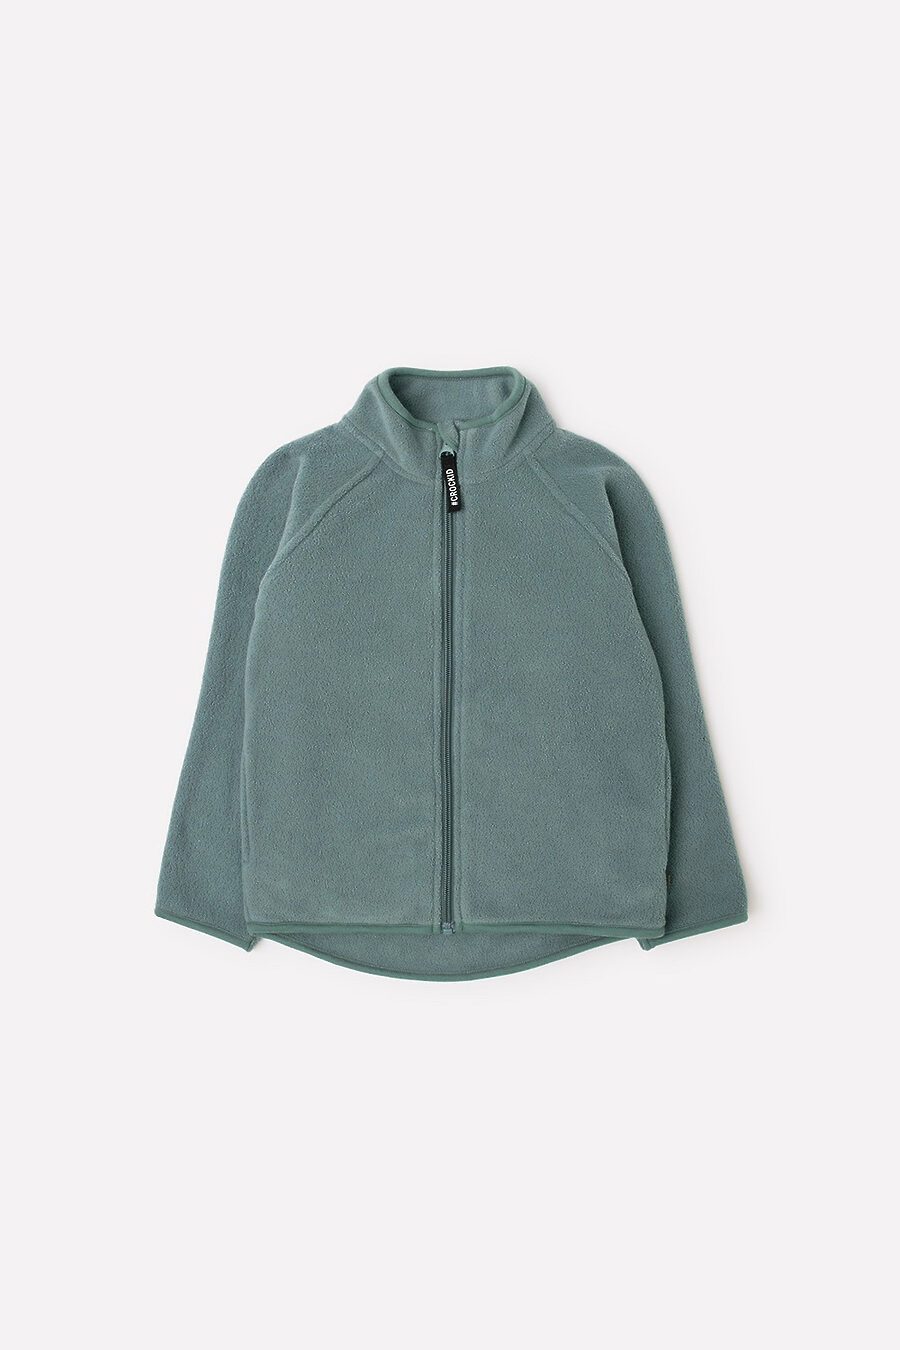 Куртка для мальчиков CROCKID 796463 купить оптом от производителя. Совместная покупка детской одежды в OptMoyo